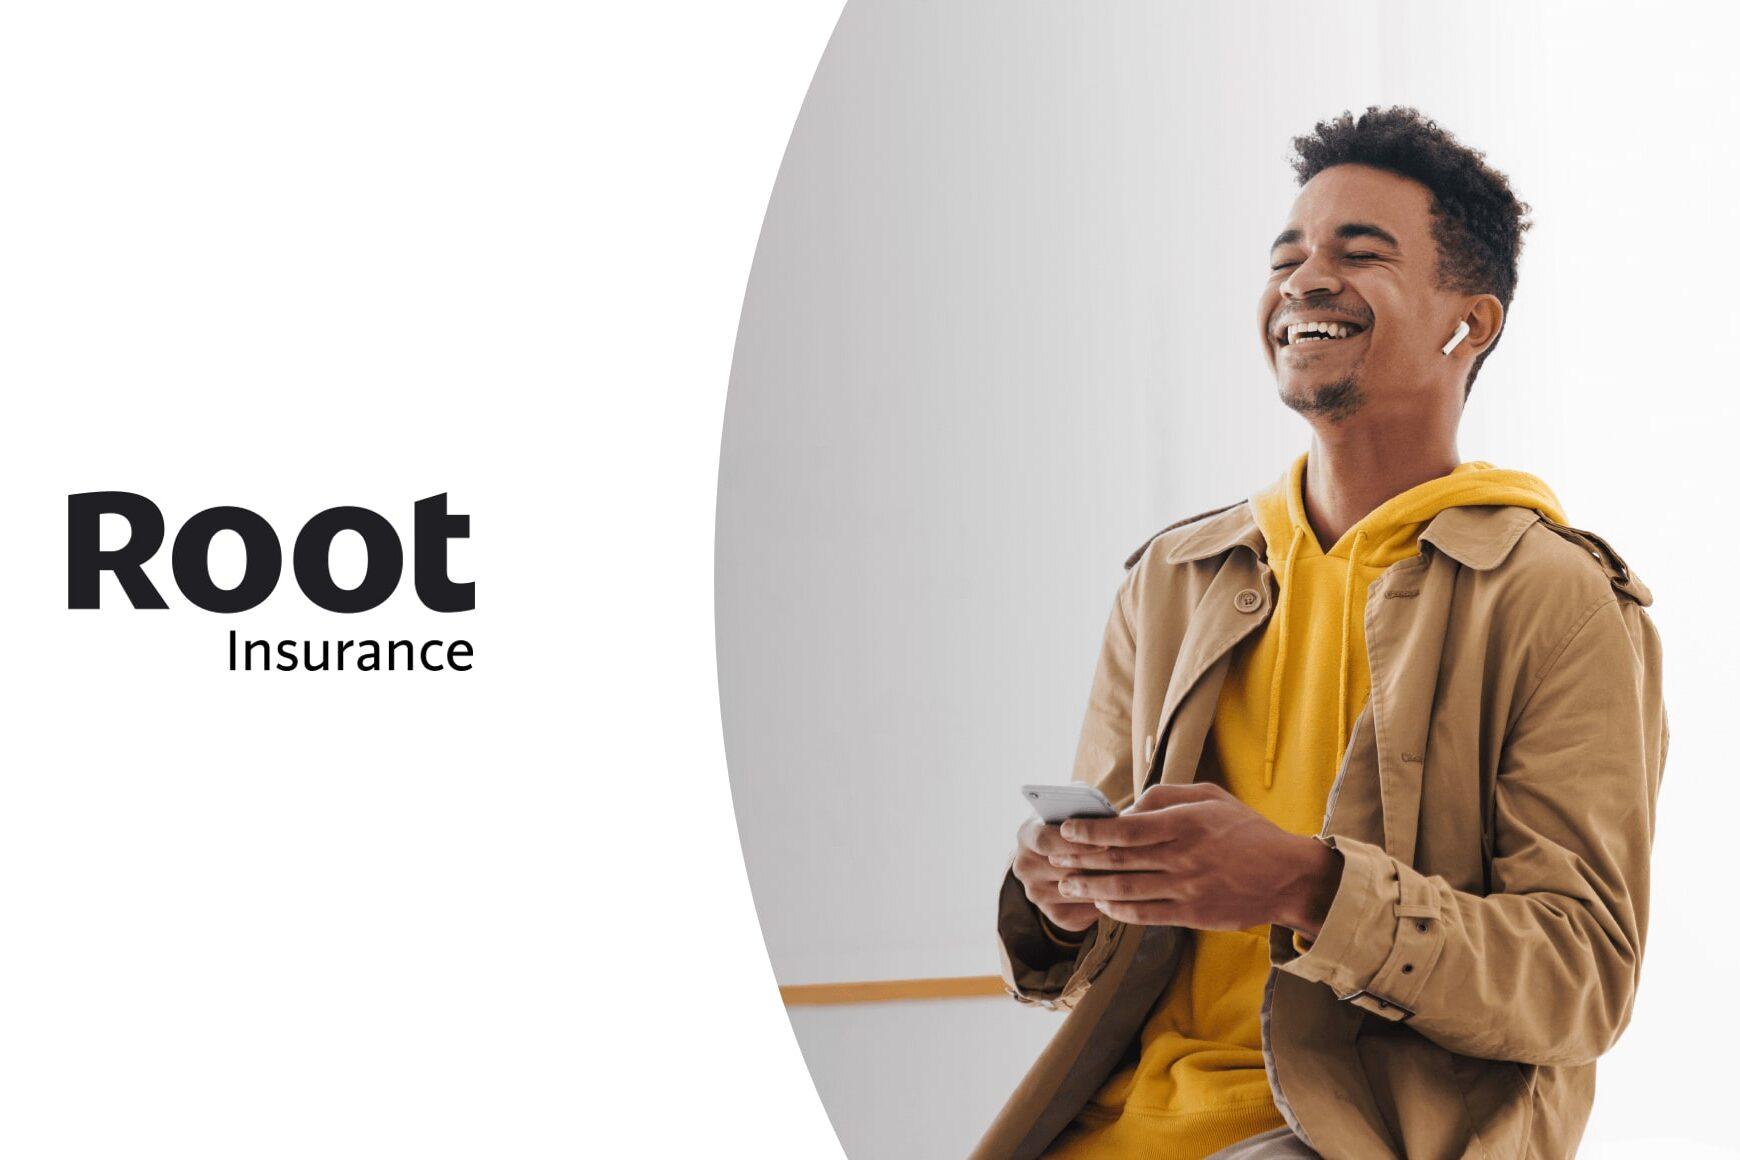 Scopri come Root Insurance sta rivoluzionando la CX con Talkdesk.